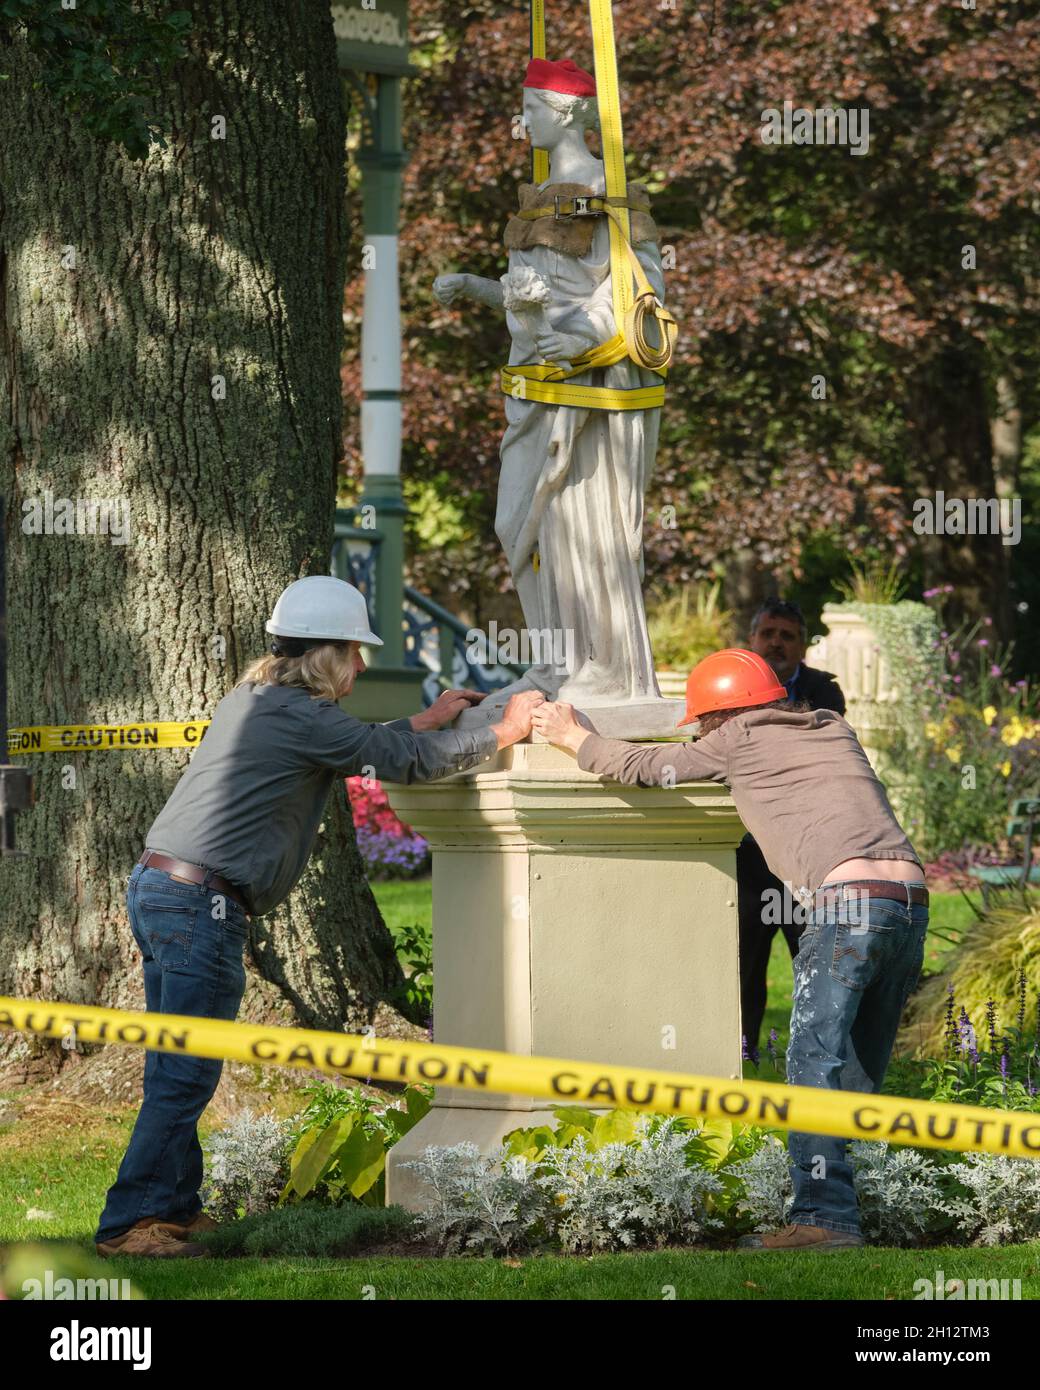 Statua di Ceres in fase di reinstallazione da parte dell'equipaggio dopo la pulizia e il restauro nei Giardini pubblici di Halifax. Halifax, Canada. Ottobre 12, 2021 Foto Stock